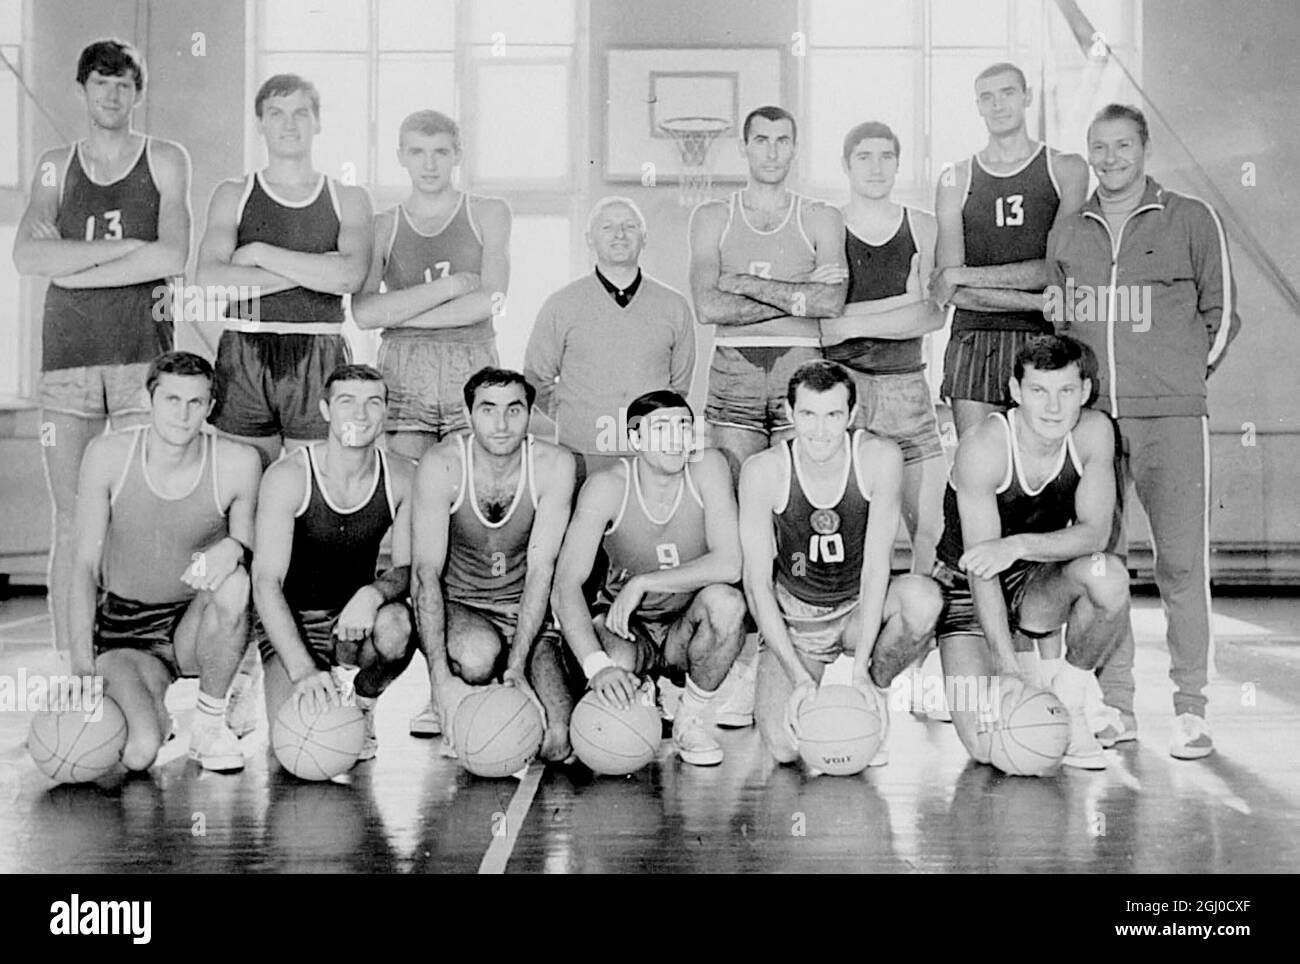 L'équipe de basket-ball de l'URSS qui prendra part au prochain championnat d'Europe et d'Italie du 27 septembre au 5 octobre 1969. Banque D'Images